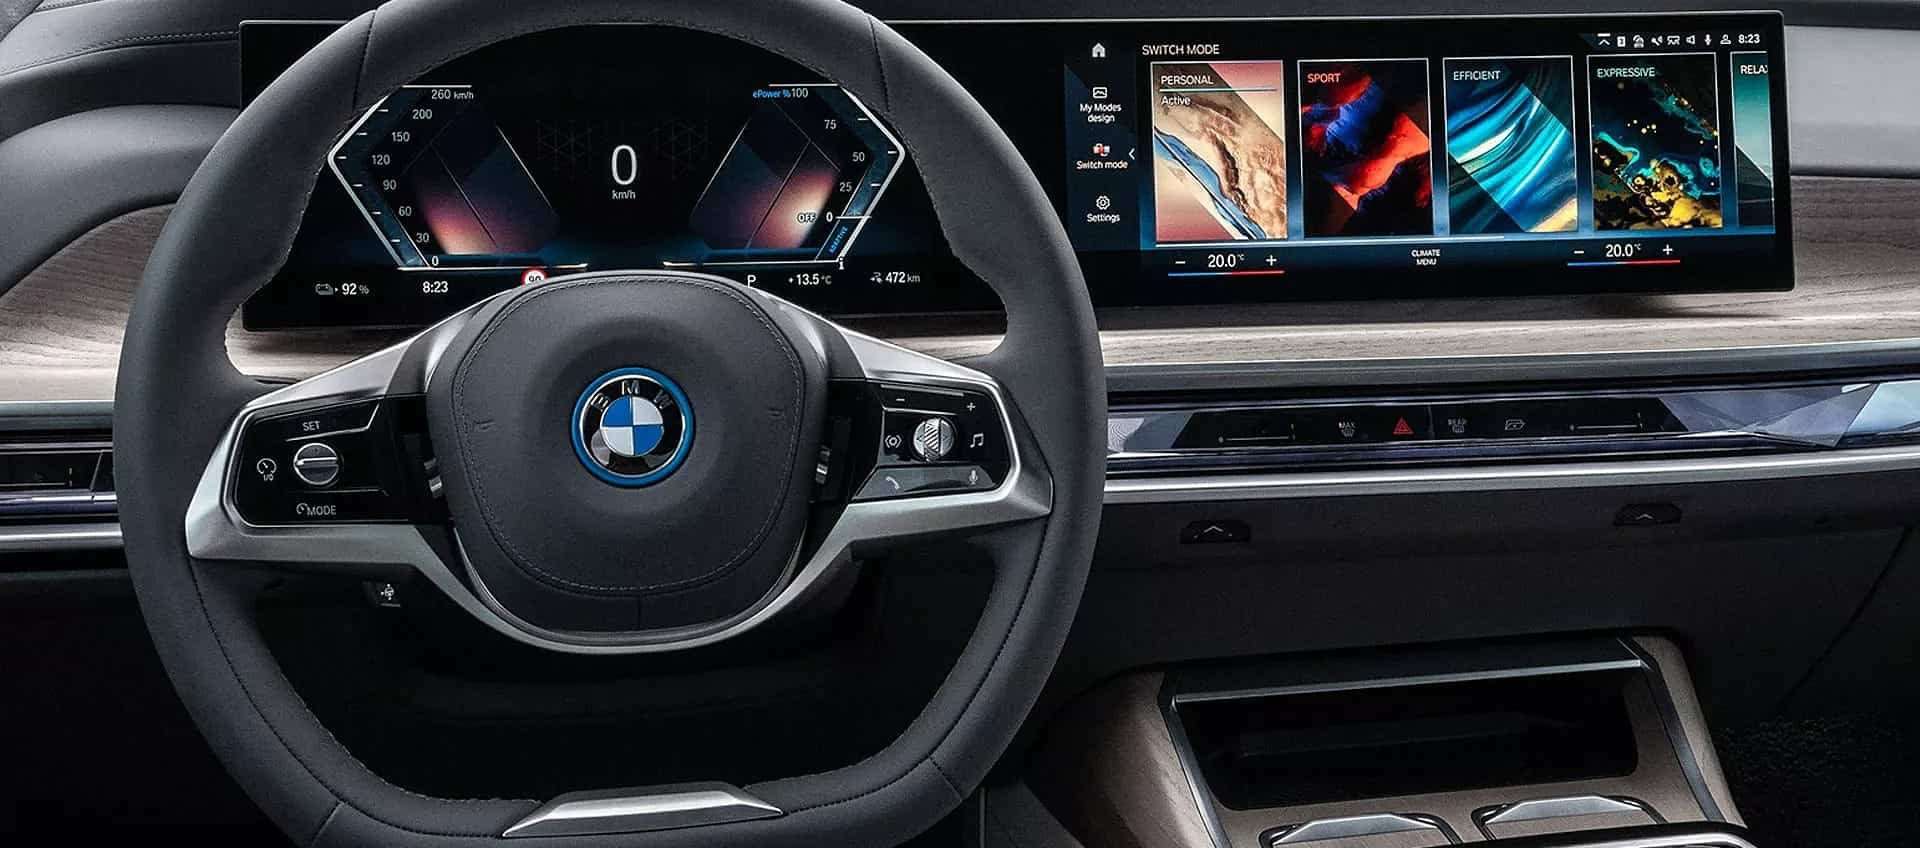 BMW sceglie Android Automotive per i suoi veicoli dal 2023